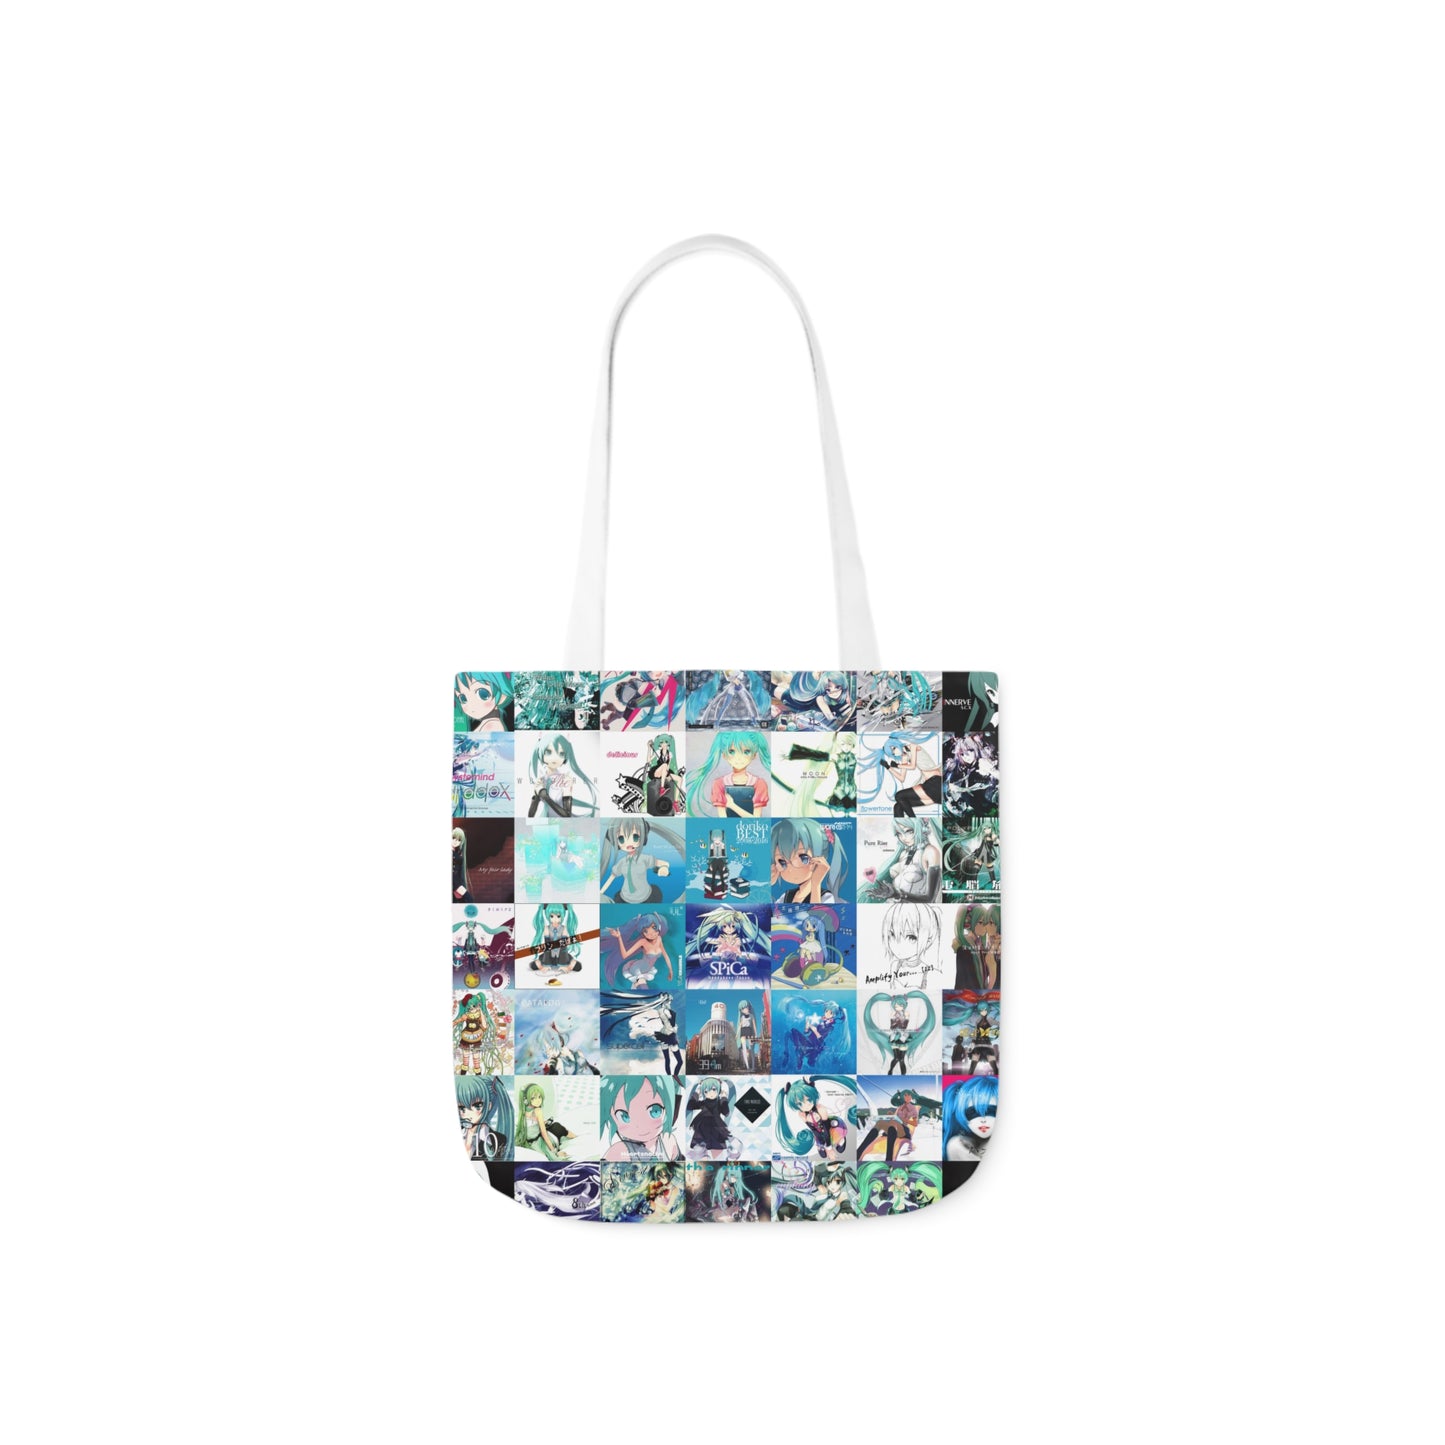 Hatsune Miku Album Cover Collage Polyester Canvas Tote Bag